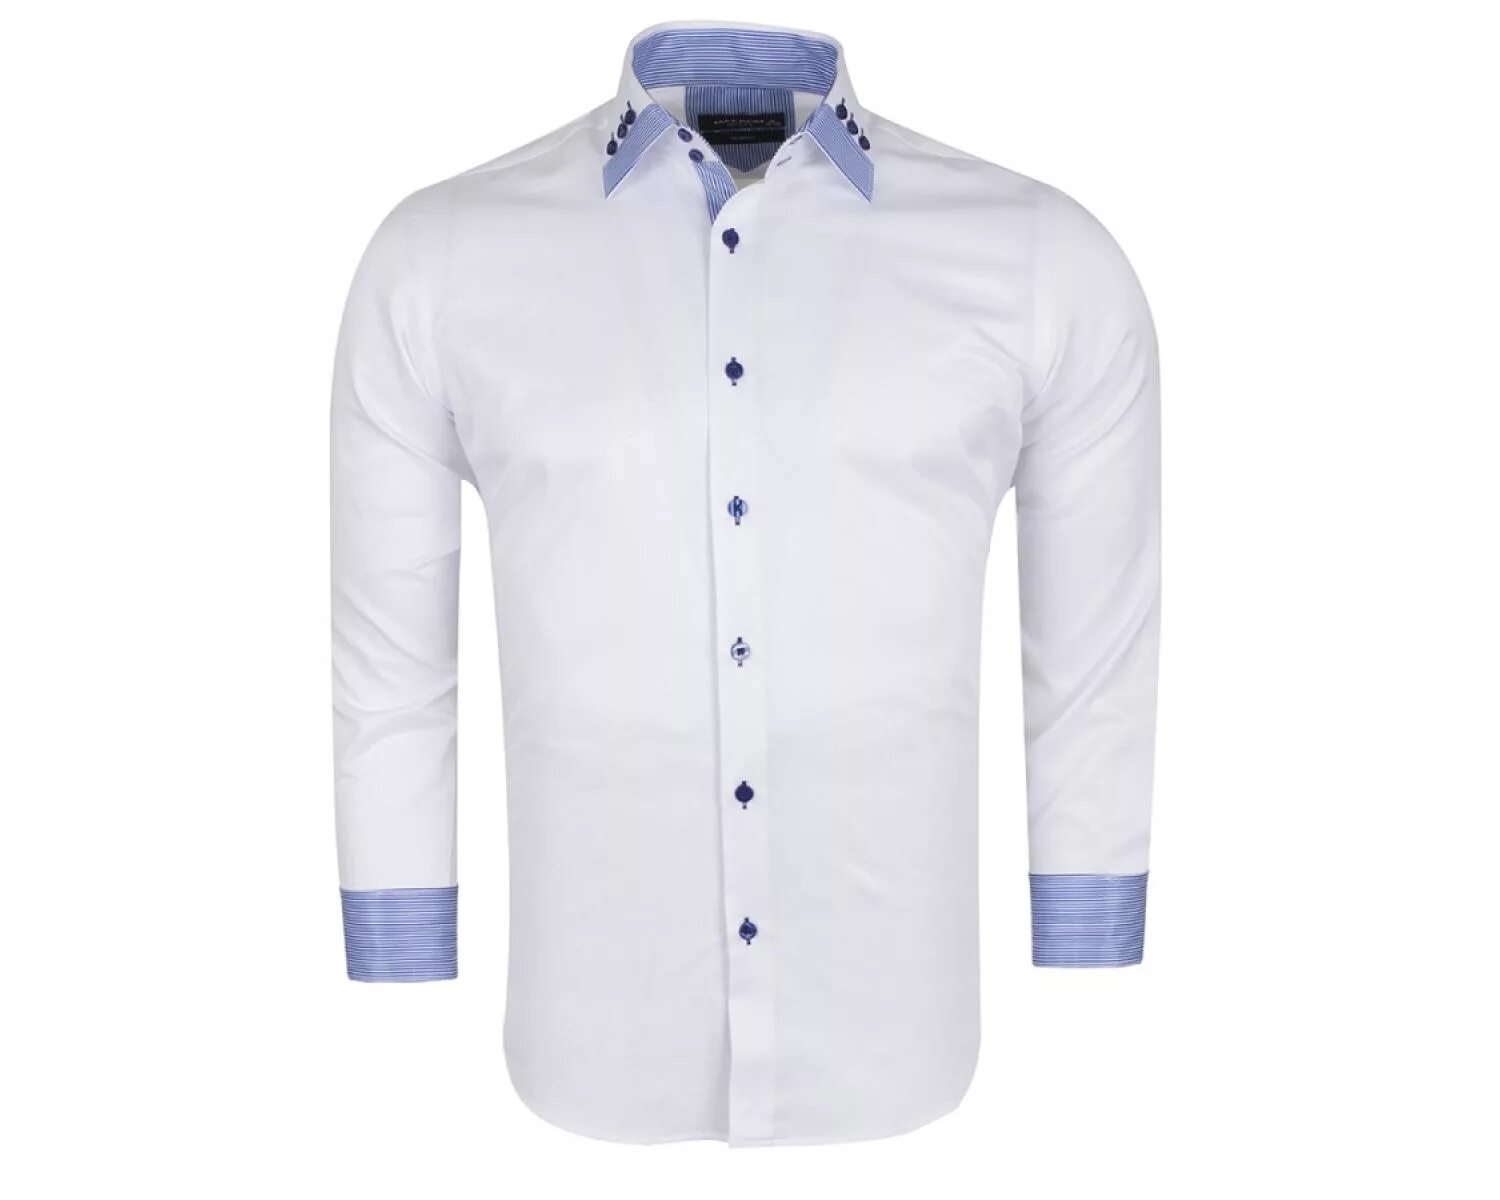 Синяя рубашка с белым воротником мужская. Голубая рубашка воротник. Синяя рубашка с белым воротником. Голубая рубашка с белым воротом.